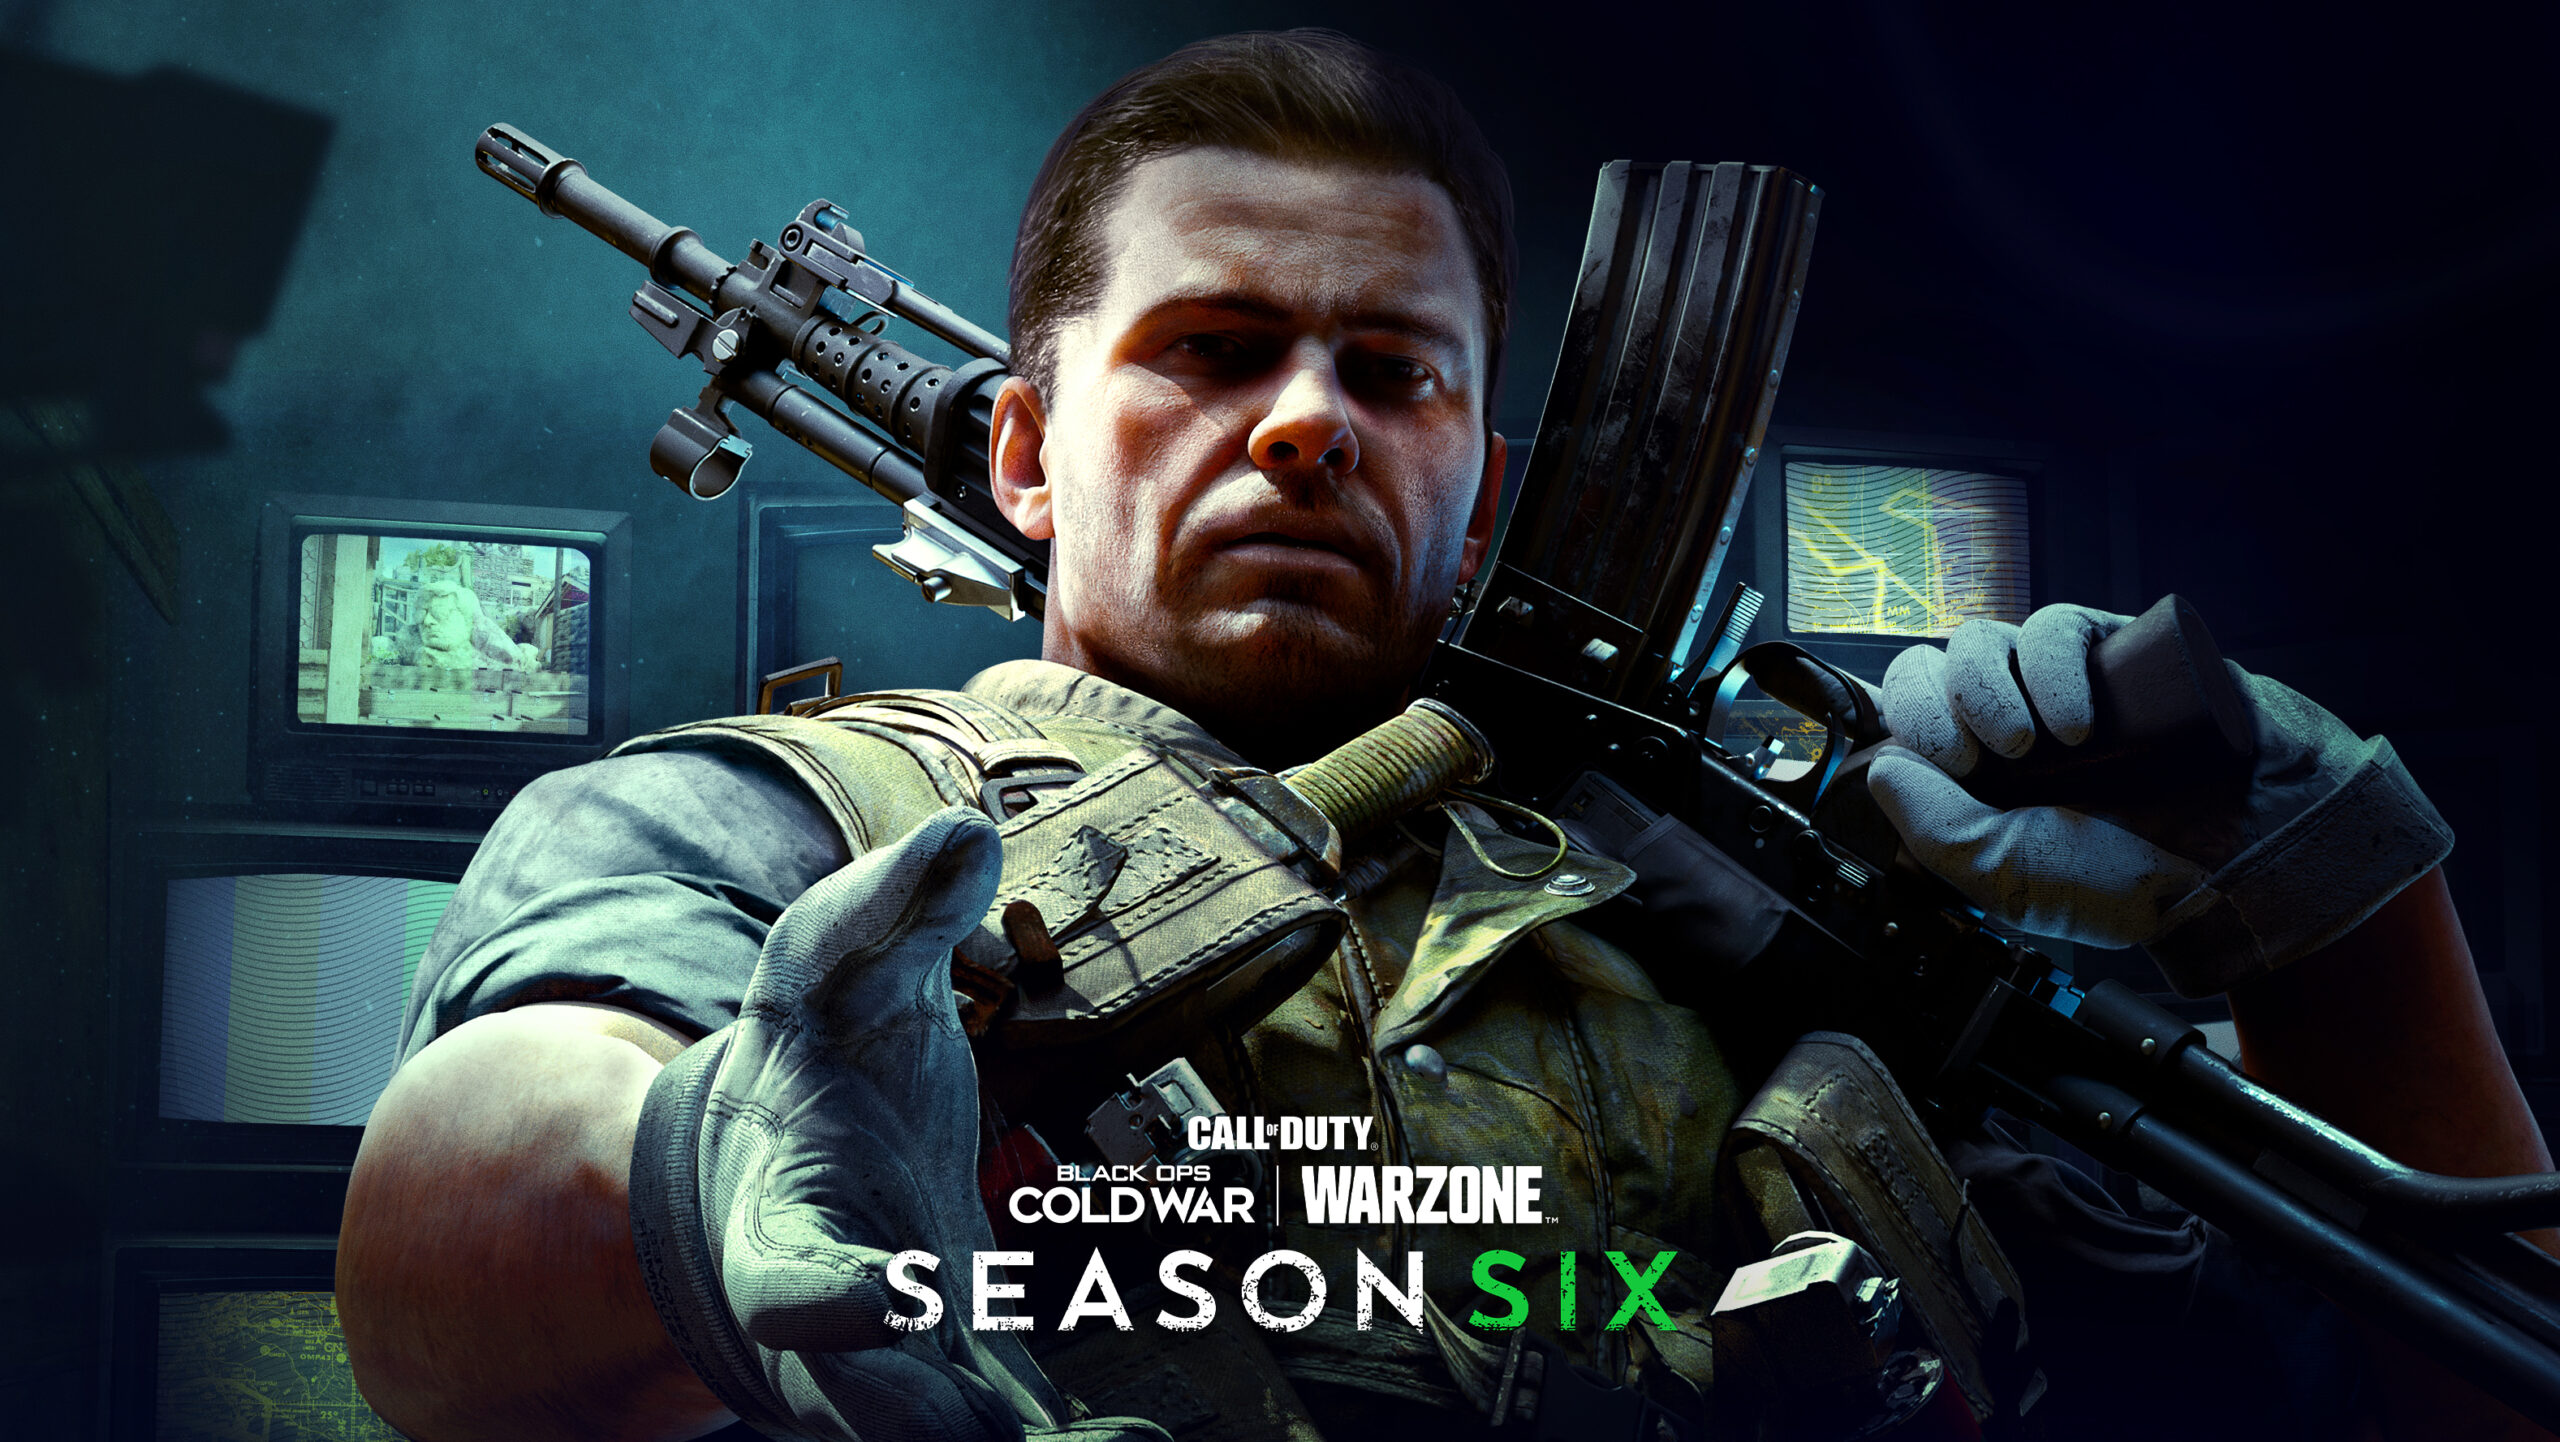 La Temporada Seis de Call of Duty: Black Ops Cold War y Warzone se lanzará el 7 de octubre